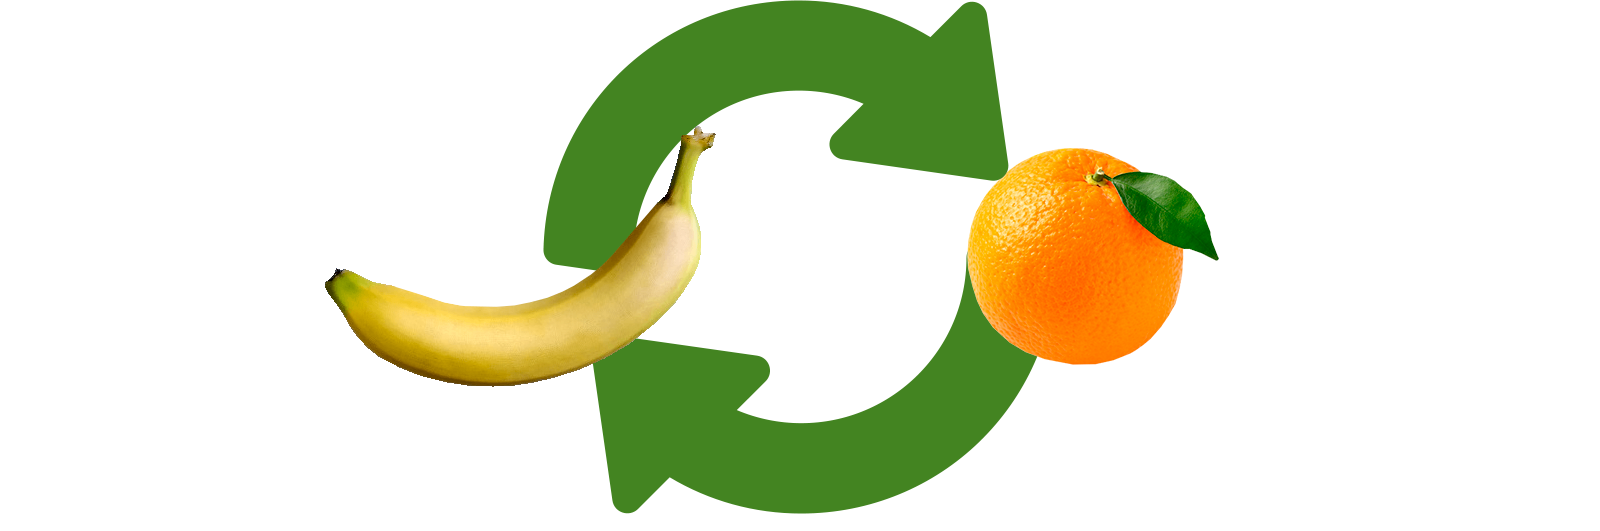 1 Banana = 1 Naranja